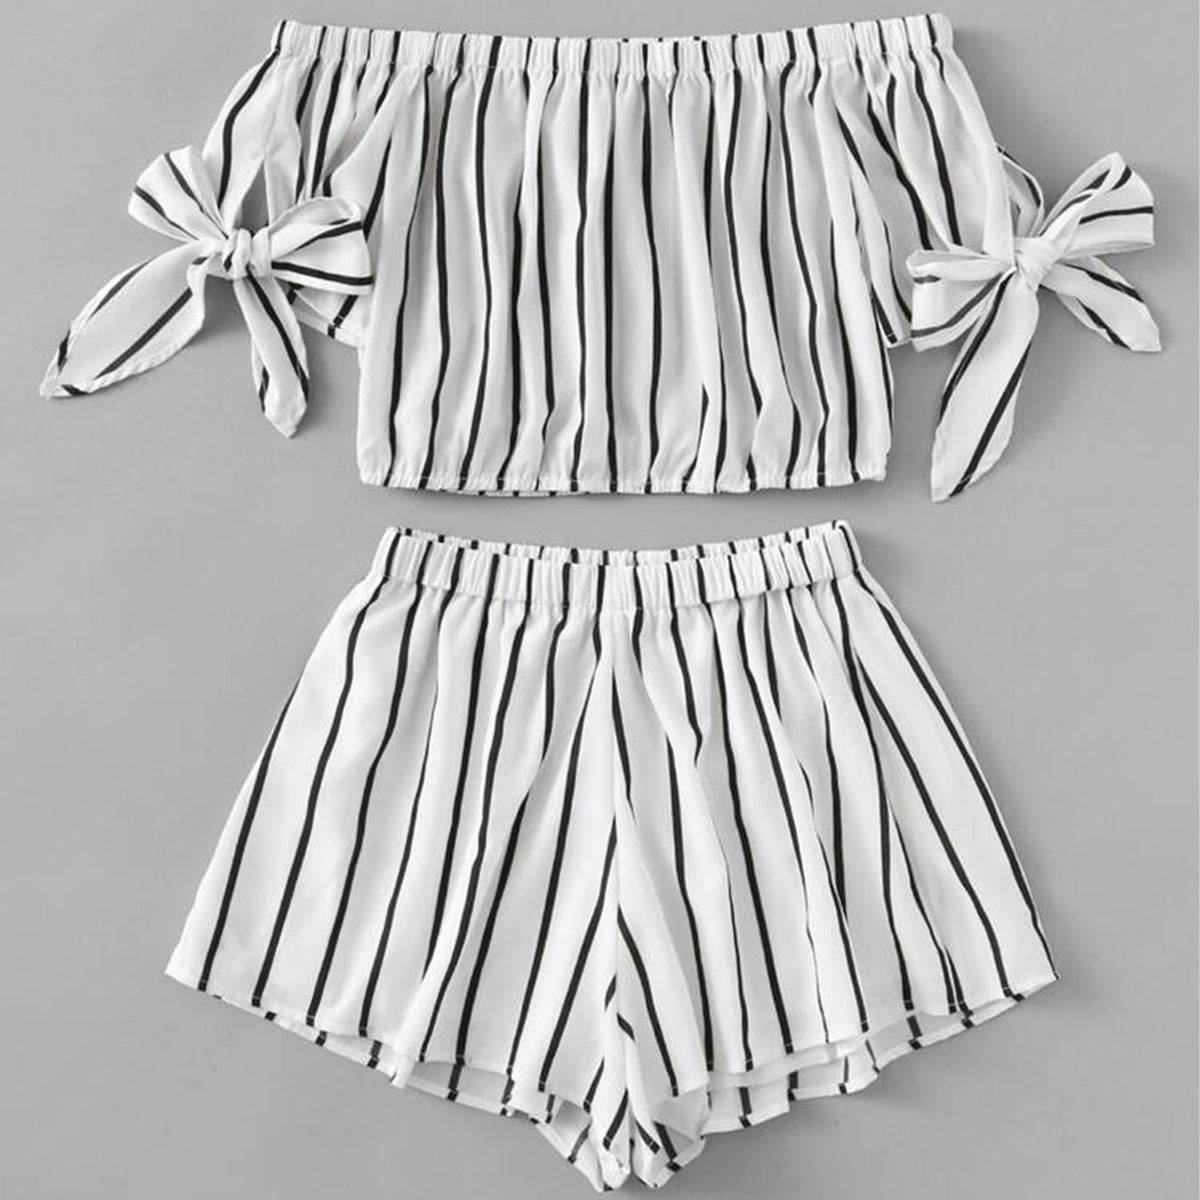 BabyGirl's Off Shoulder Top And Stripes Shorts Set For Kids.